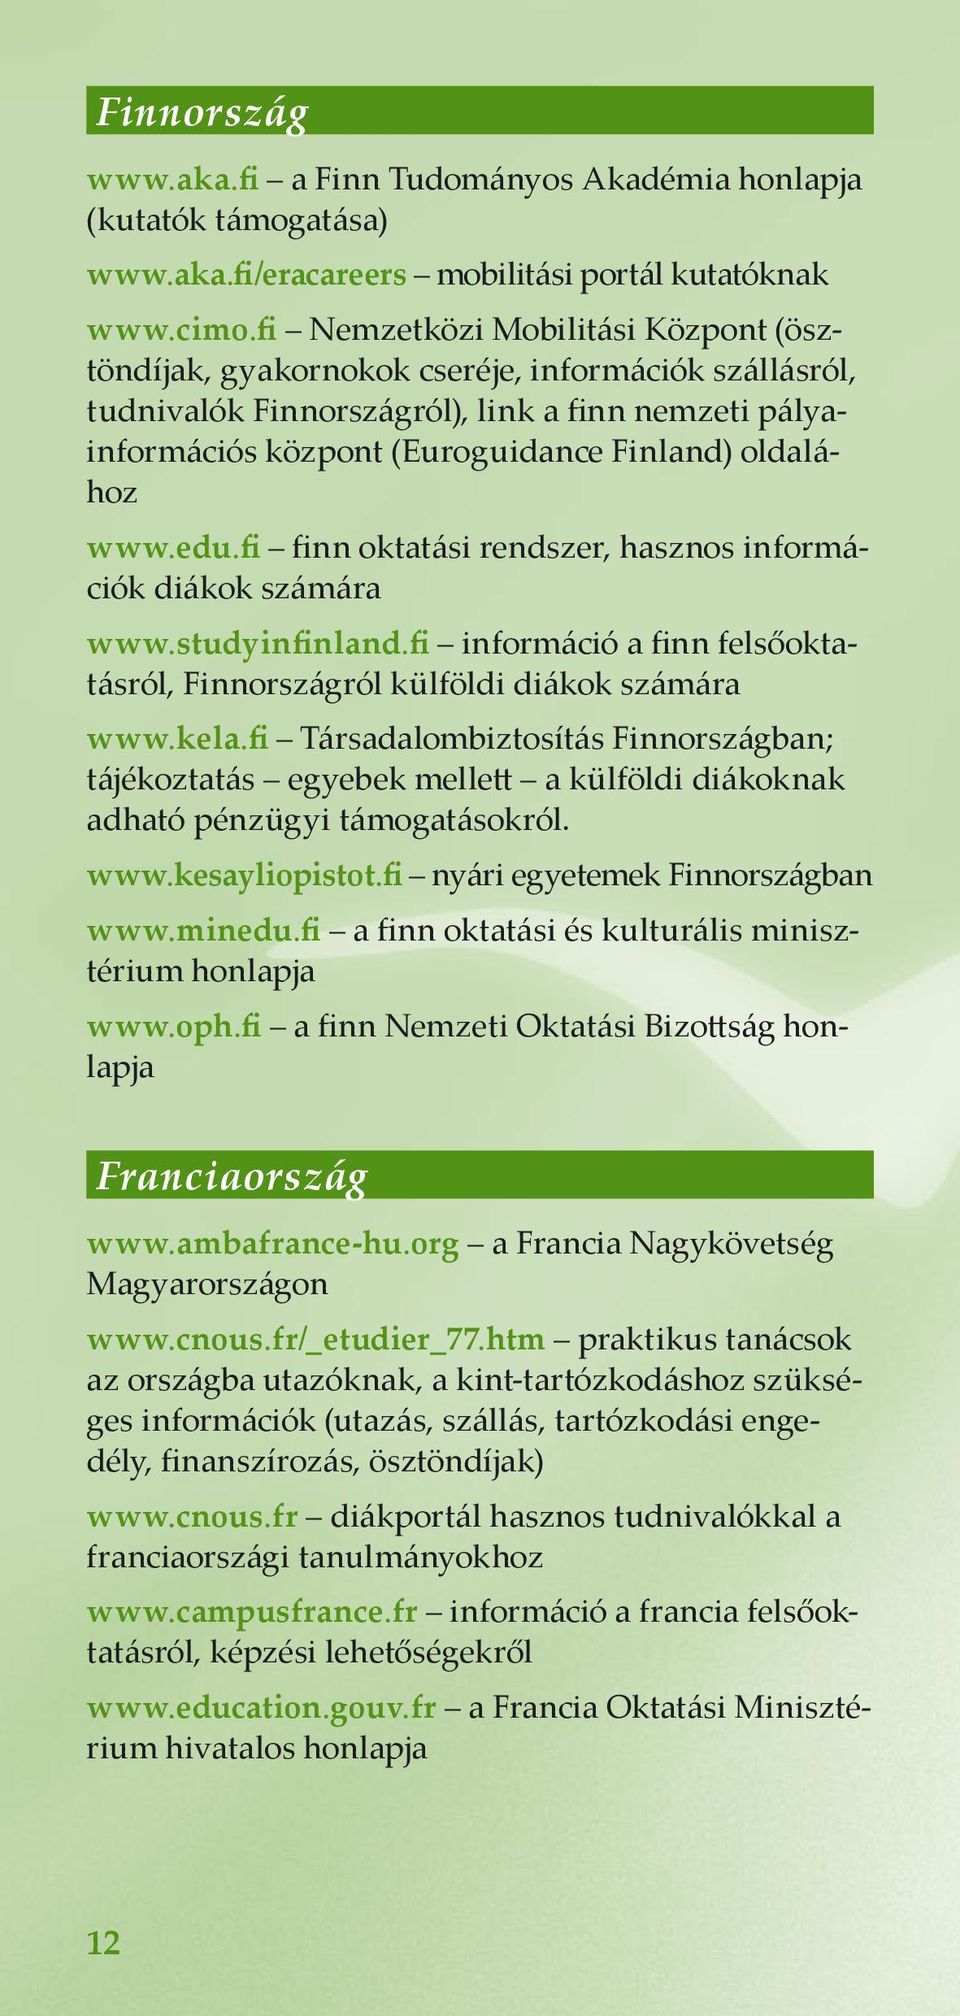 www.edu.fi finn oktatási rendszer, hasznos információk diákok számára www.studyinfinland.fi információ a finn felsőoktatásról, Finnországról külföldi diákok számára www.kela.